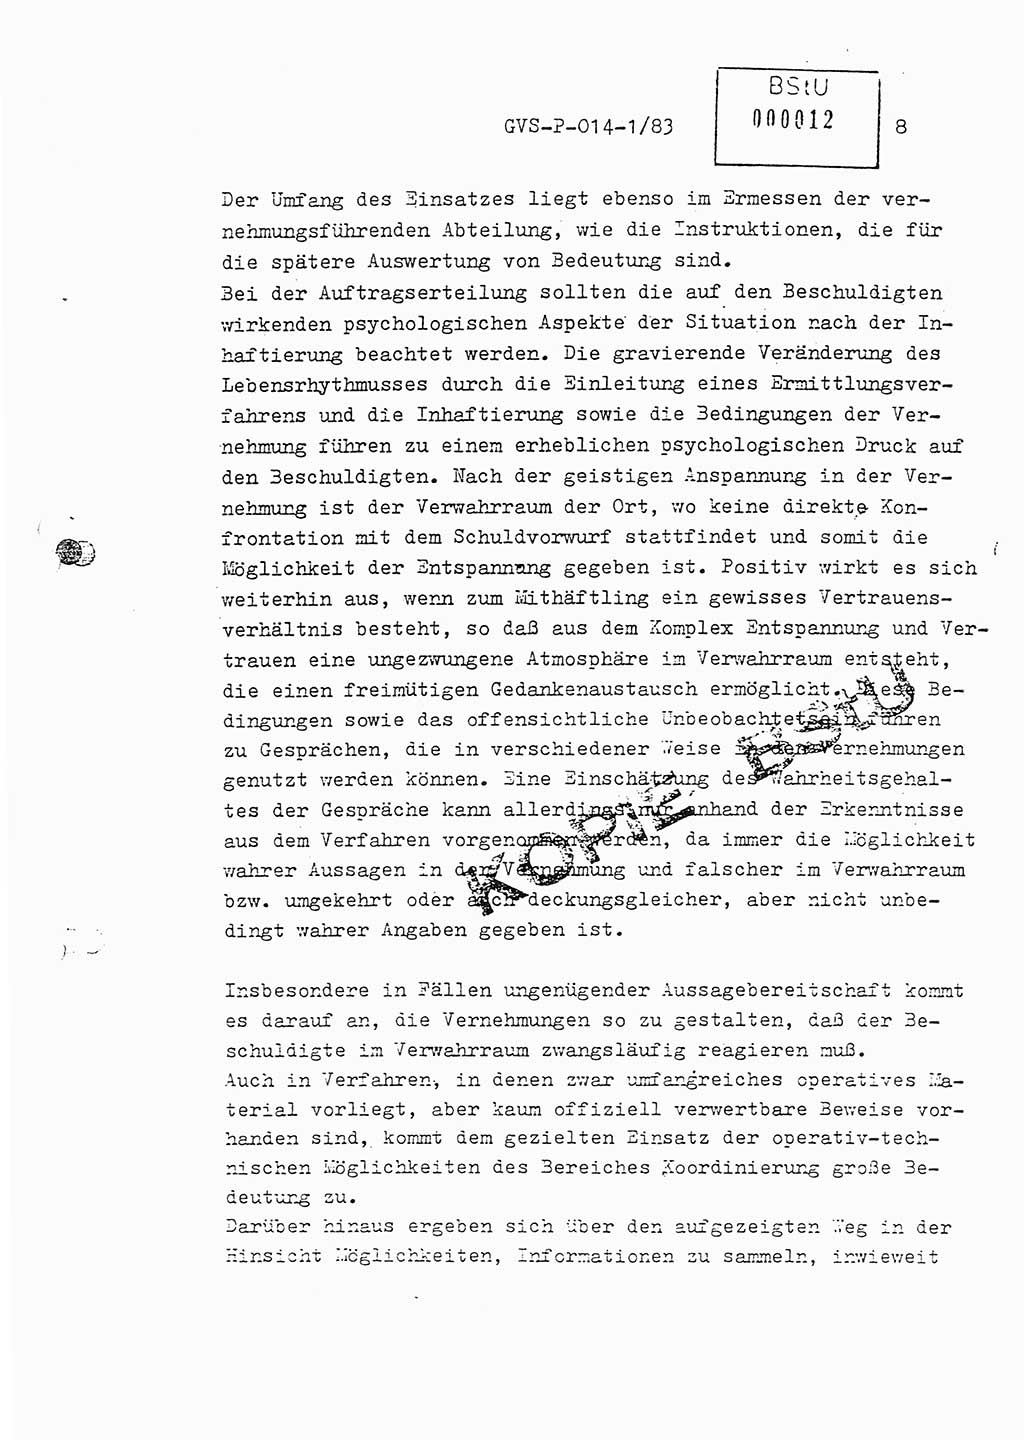 Fachschulabschlußarbeit Leutnant Dirk Autentrieb (HA Ⅸ/AKG), Ministerium für Staatssicherheit (MfS) [Deutsche Demokratische Republik (DDR)], Hauptabteilung (HA) Ⅸ, Geheime Verschlußsache (GVS) P-014-1/83, Berlin 1983, Blatt 8 (FS-Abschl.-Arb. MfS DDR HA Ⅸ GVS P-014-1/83 1983, Bl. 8)